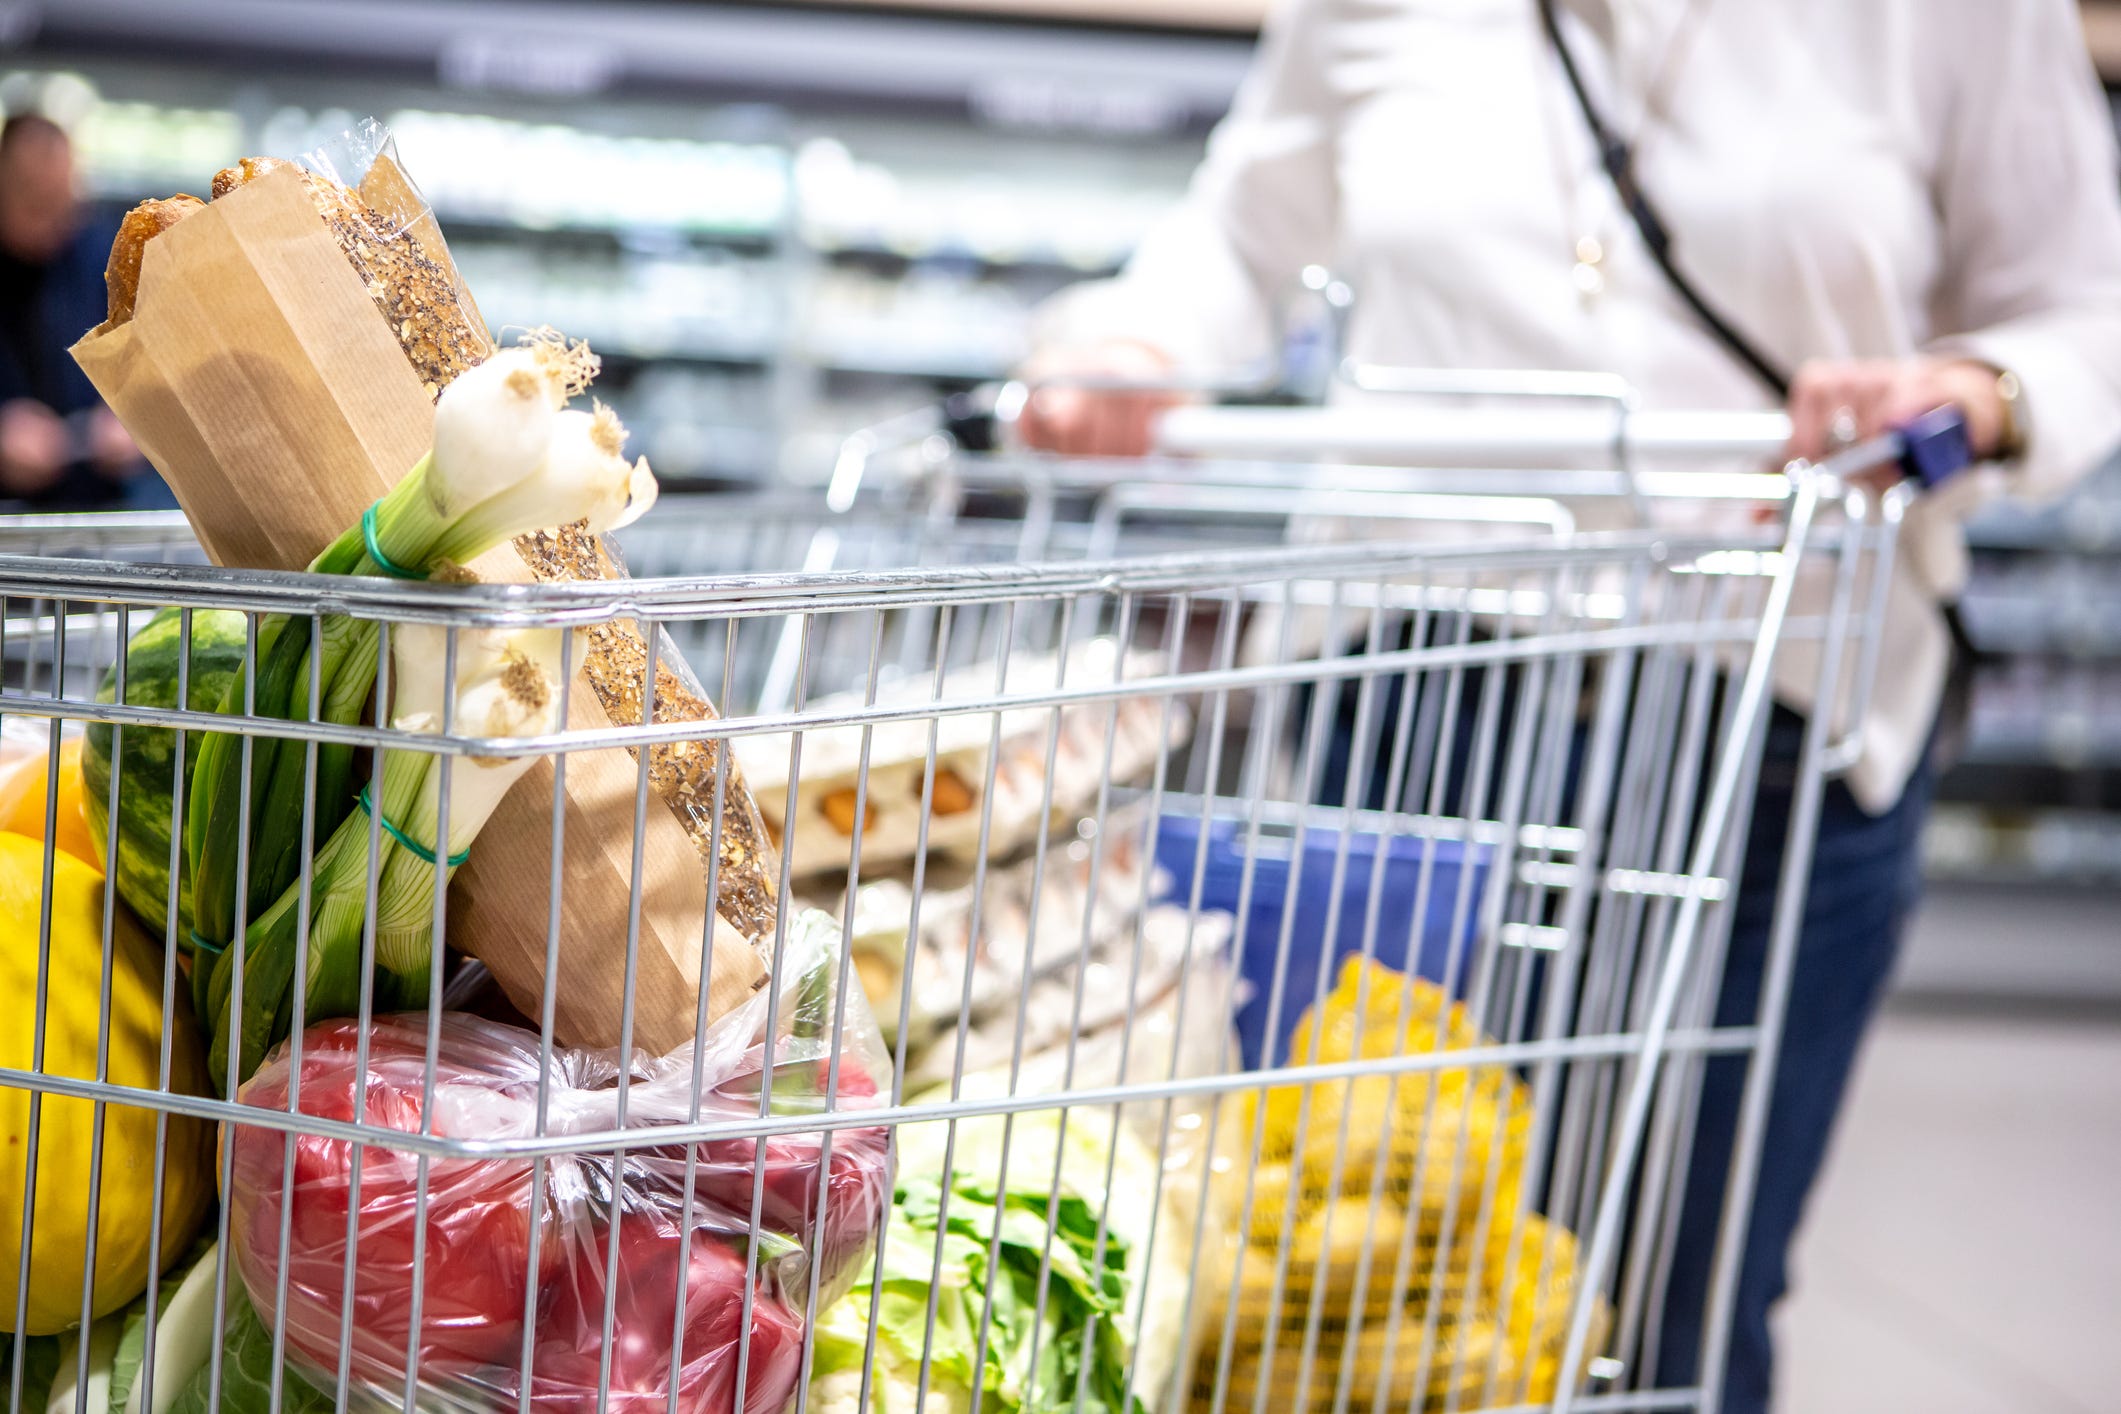 Frau schiebt einen Einkaufswagen in einen Supermarkt voller Brot, Eier und Gemüse